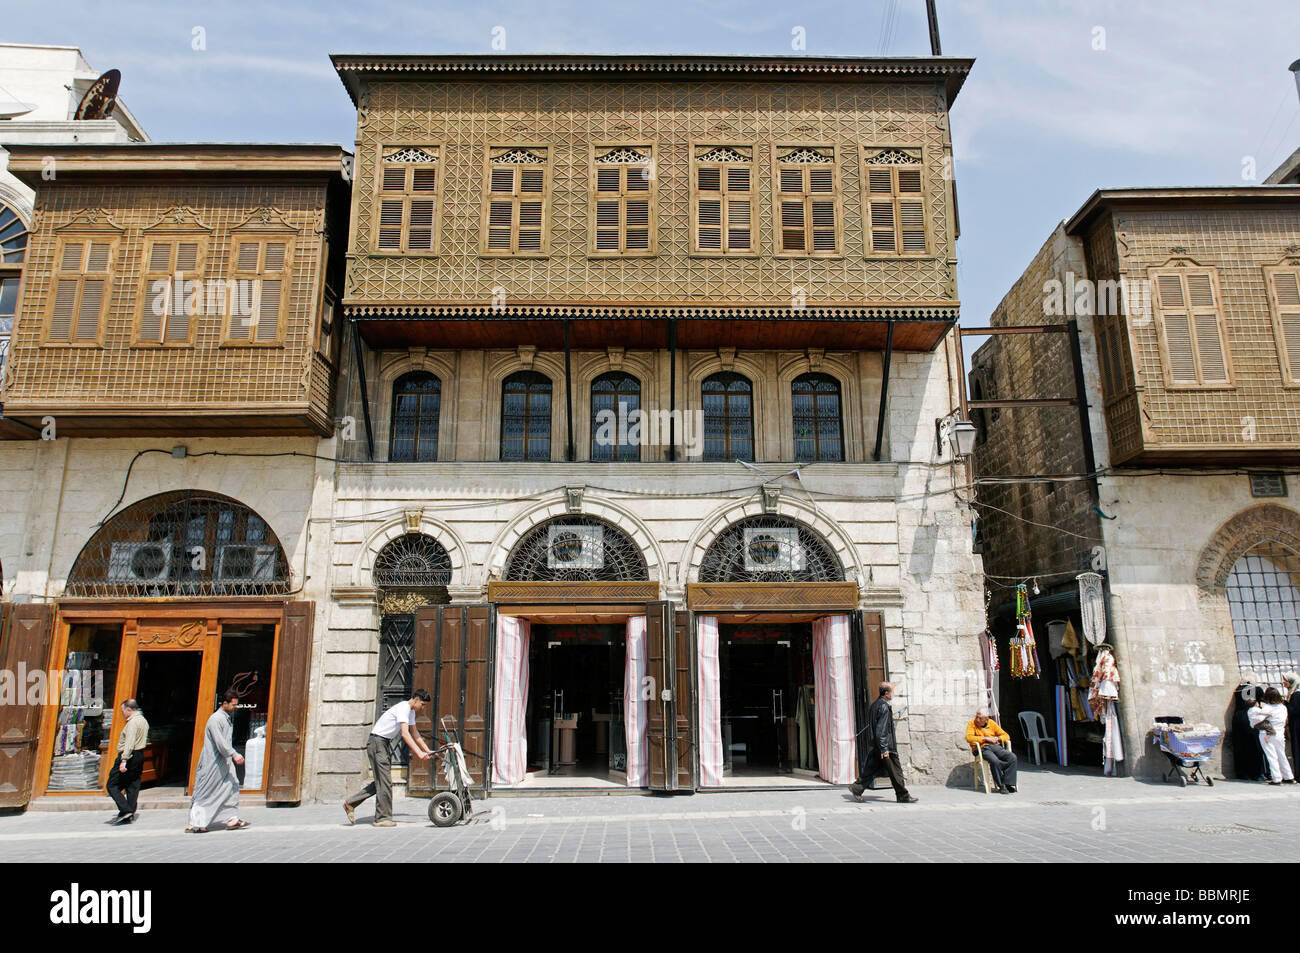 Balconi in legno, ottomano stile architettonico di Aleppo, Siria, Medio Oriente e Asia Foto Stock